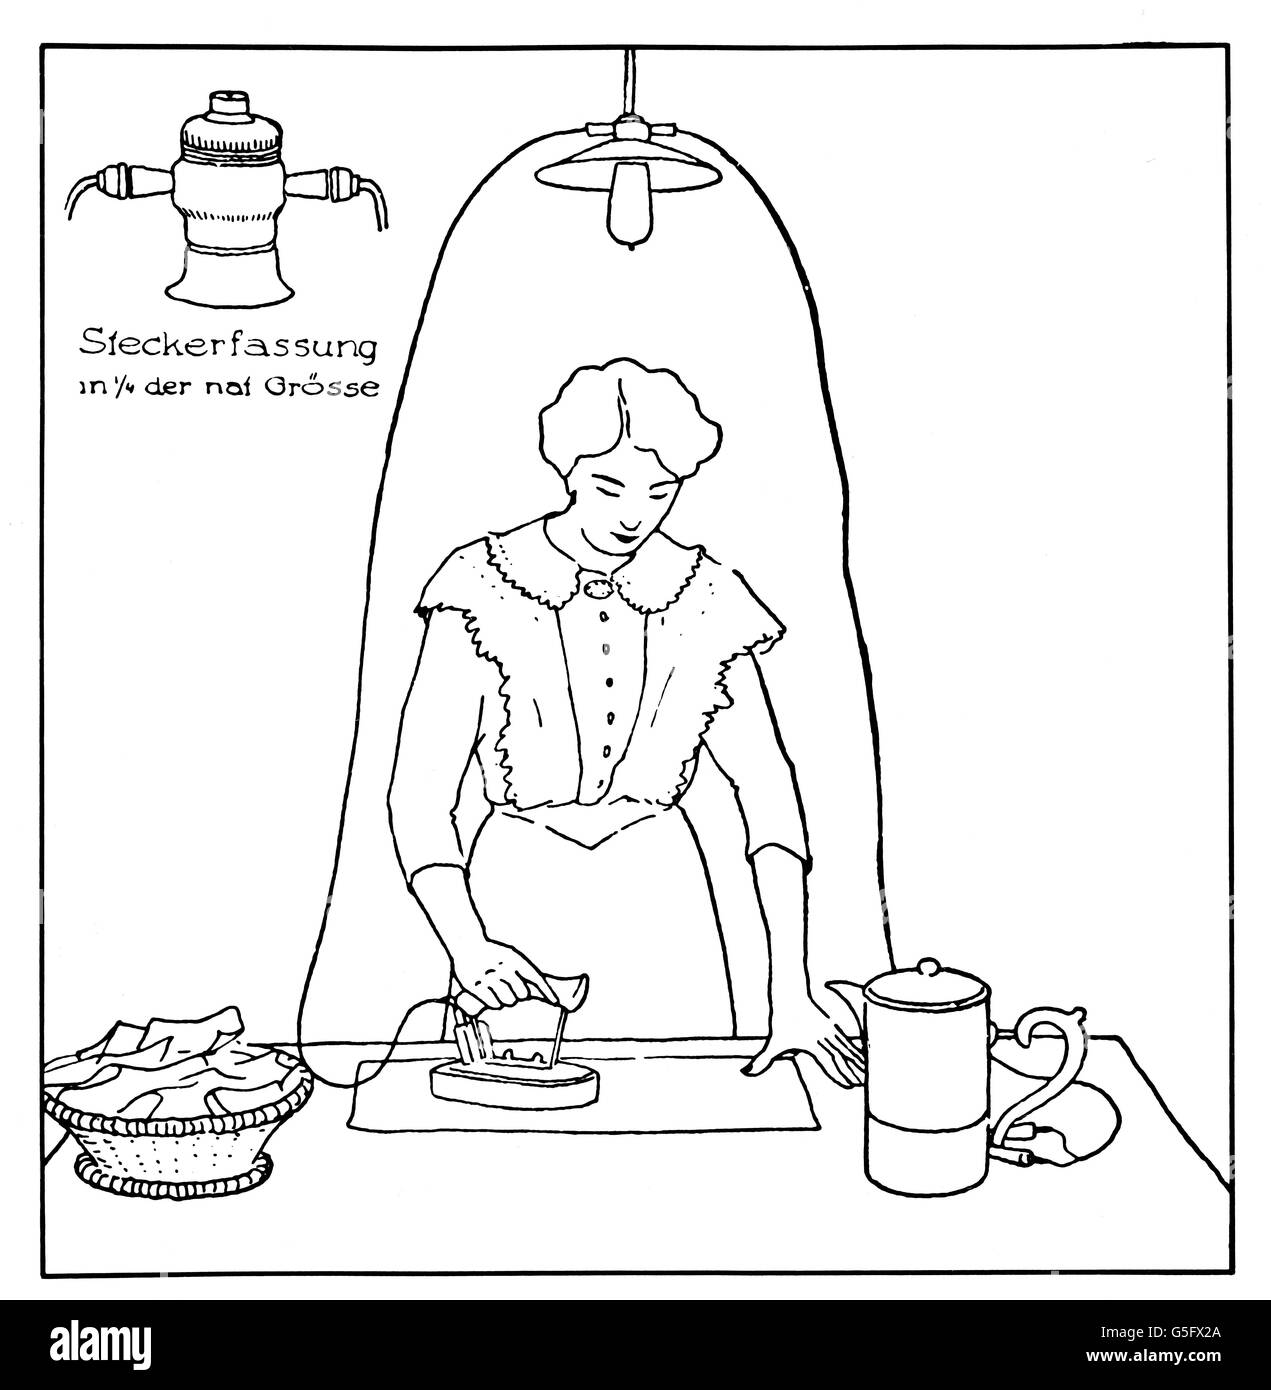 Haushalt, Bügeleisen und Kaffeekanne an Steckdosen an der Lampe angeschlossen, Zeichnung, um 1910, Zusatzrechte-Clearences-nicht vorhanden Stockfoto